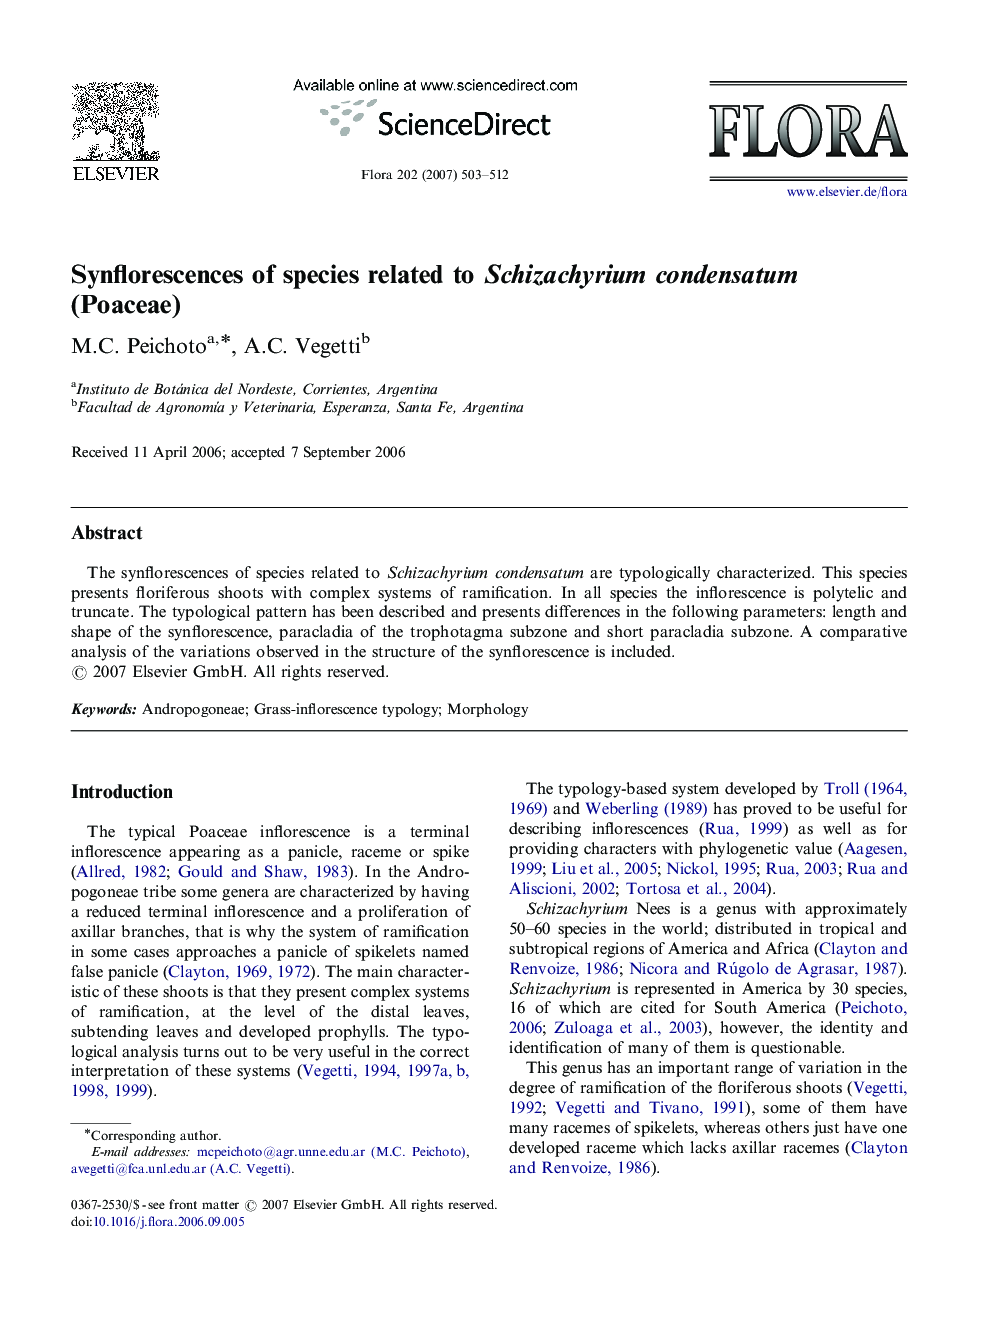 Synflorescences of species related to Schizachyrium condensatum (Poaceae)